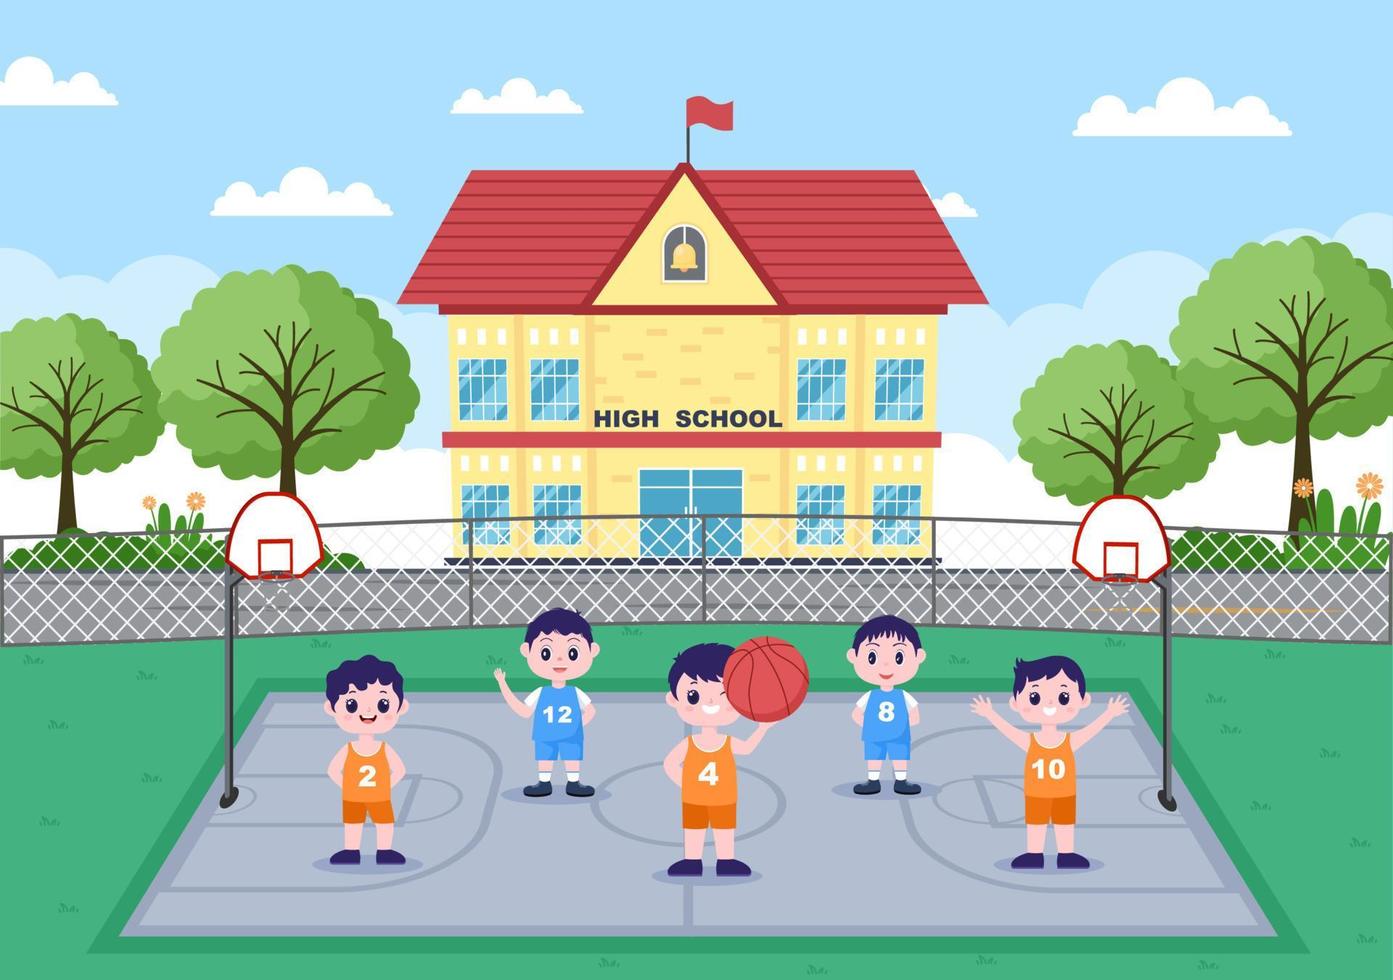 glada barn tecknade spelar basket platt design illustration bär korg uniform i utomhusbanan för bakgrund, affisch eller banderoll vektor